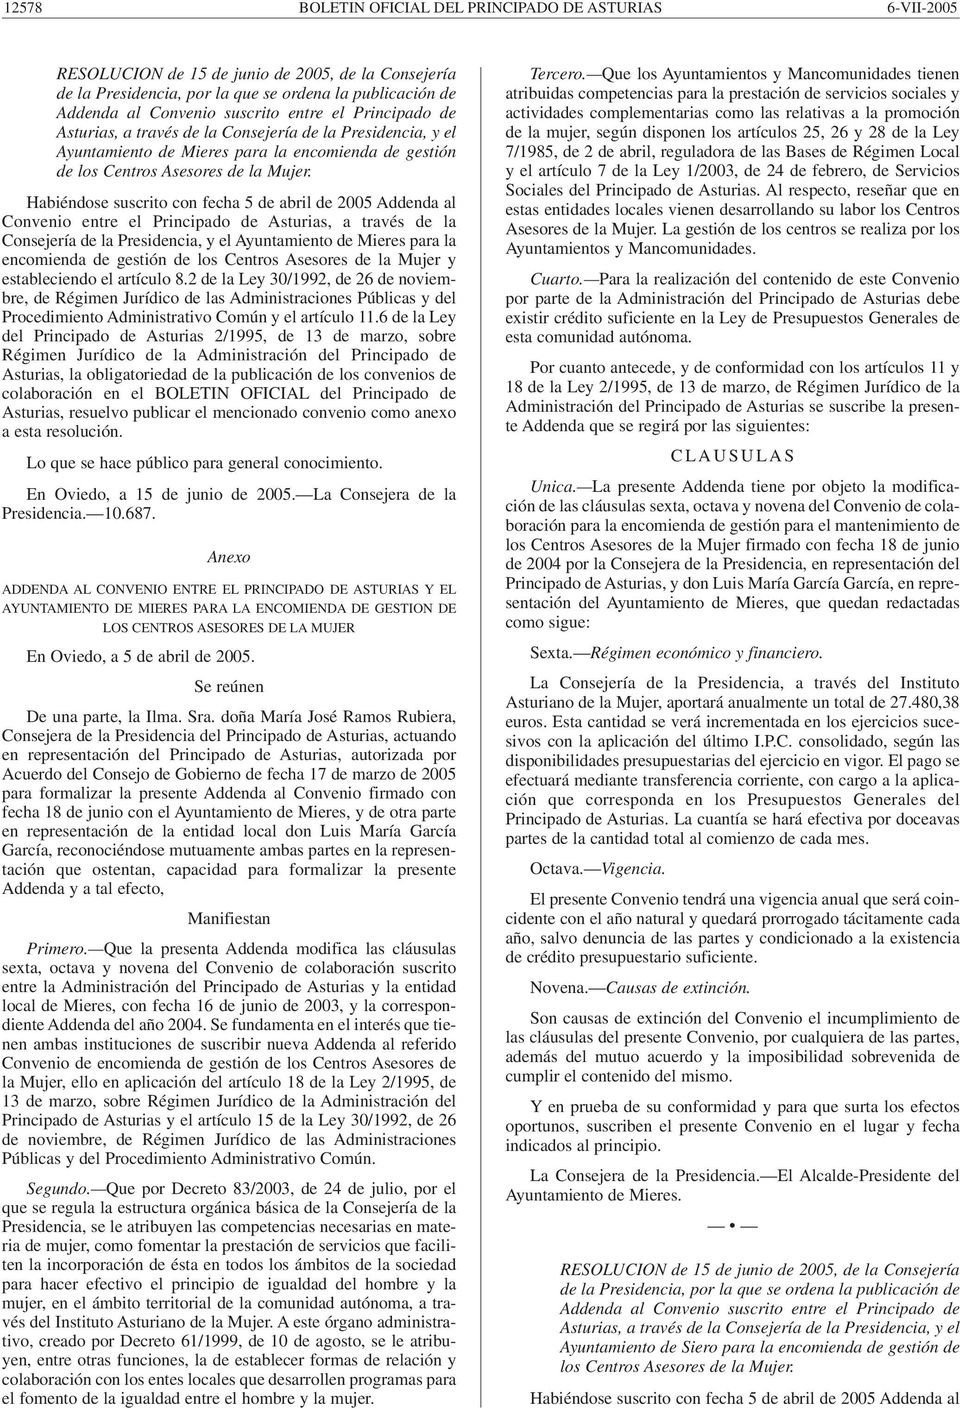 Habiéndose suscrito con fecha 5 de abril de 2005 Addenda al Convenio entre el Principado de Asturias, a través de la Consejería de la Presidencia, y el Ayuntamiento de Mieres para la encomienda de